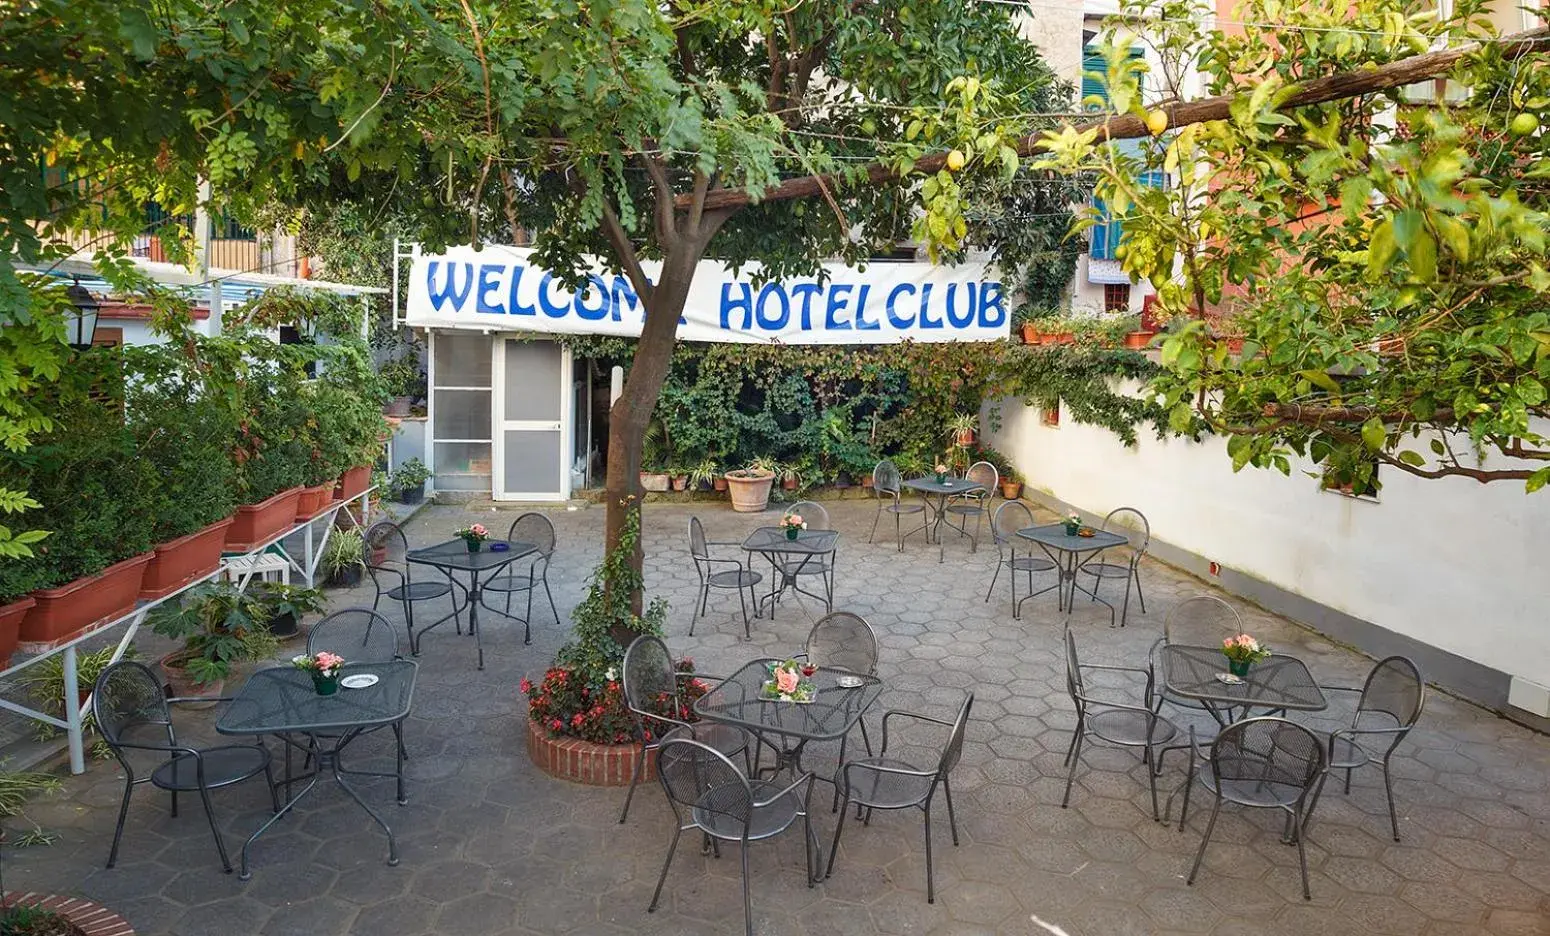 Garden in Hotel Club